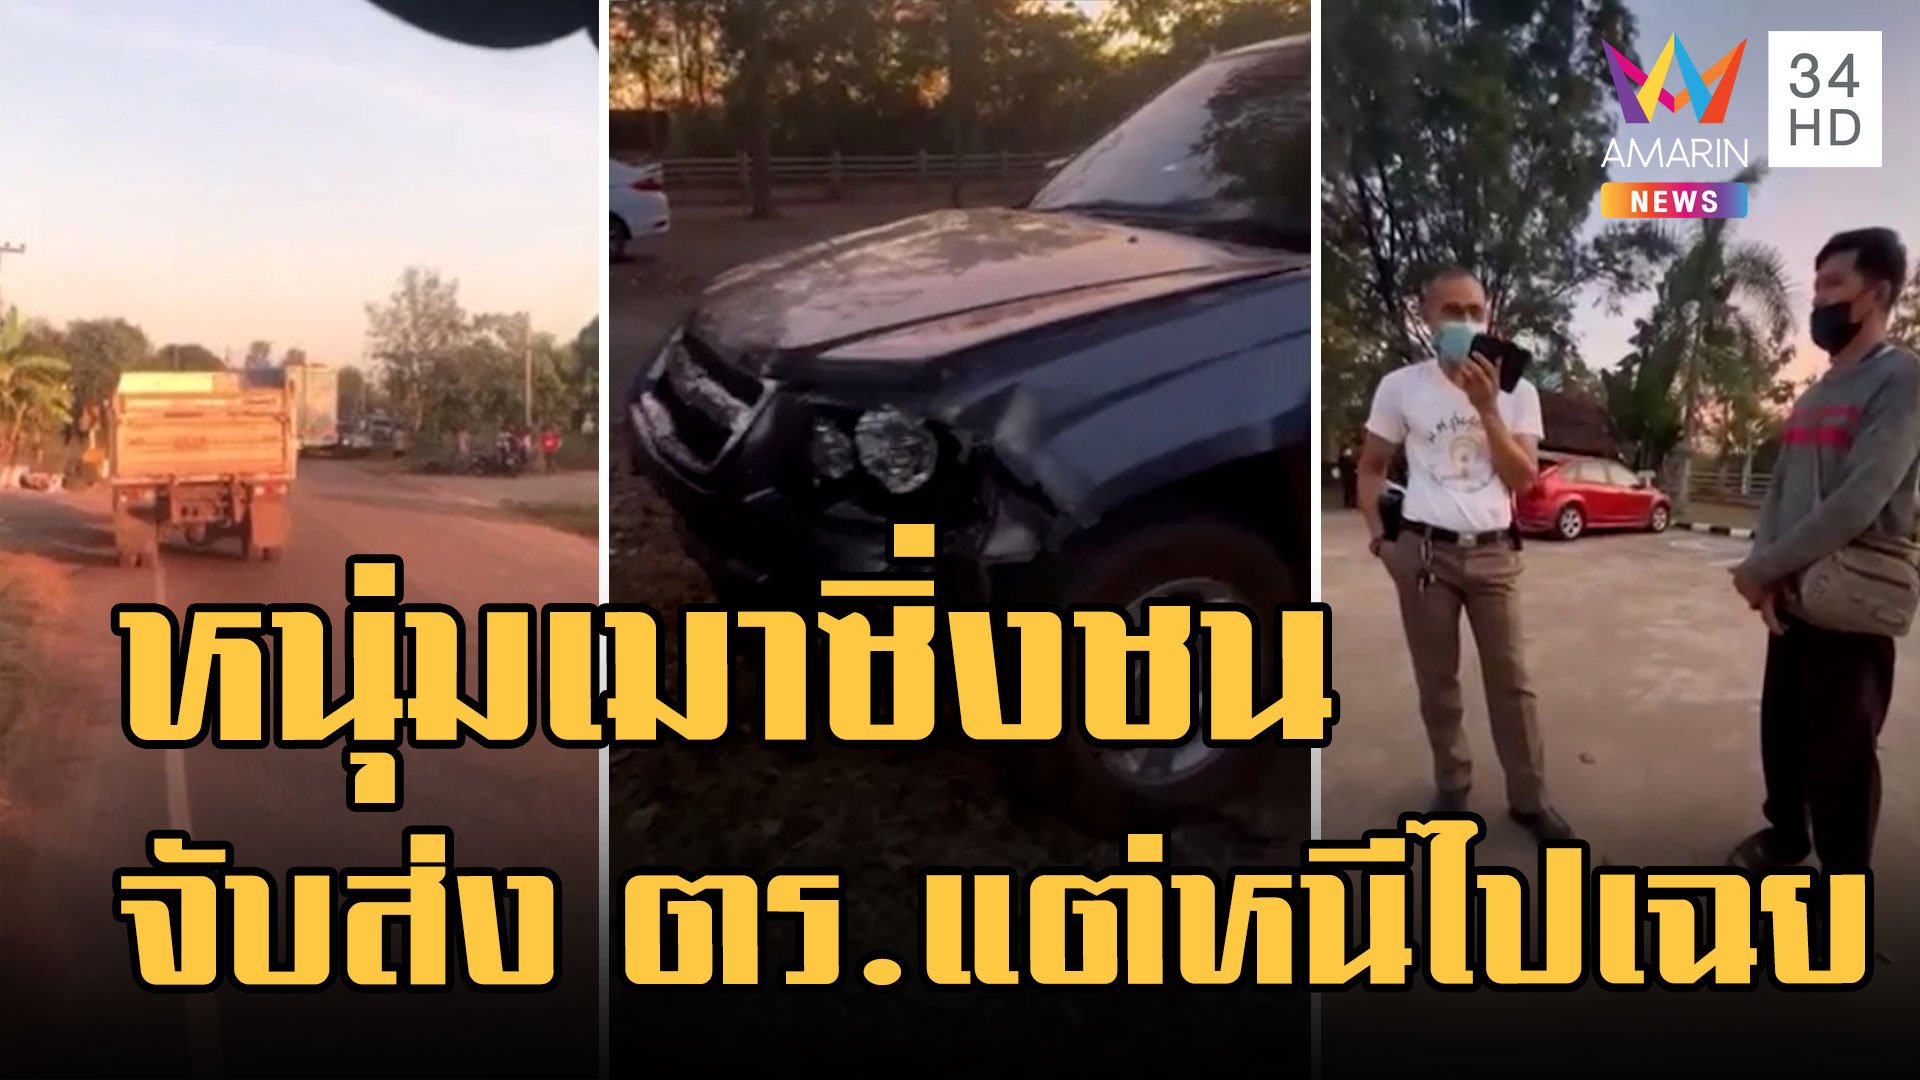 หนุ่มเมาซิ่งกระบะชน จยย. เสื้อ ตร.แขวนในรถ ล้อมจับส่งตำรวจแต่หนีไปเฉย  | ข่าวเที่ยงอมรินทร์ | 29 ธ.ค. 65 | AMARIN TVHD34